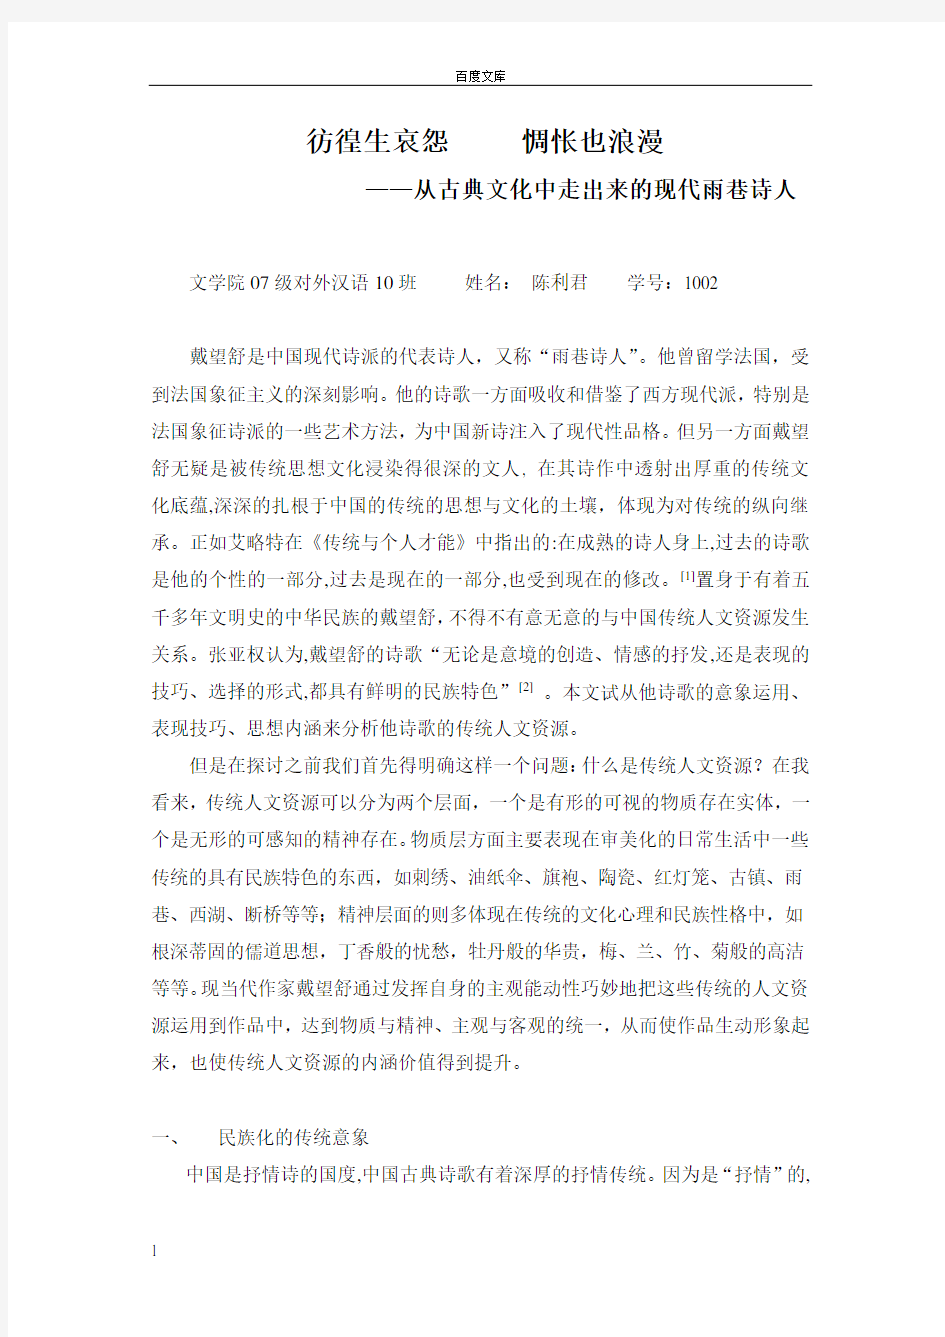 戴望舒是中国现代诗派的代诗人